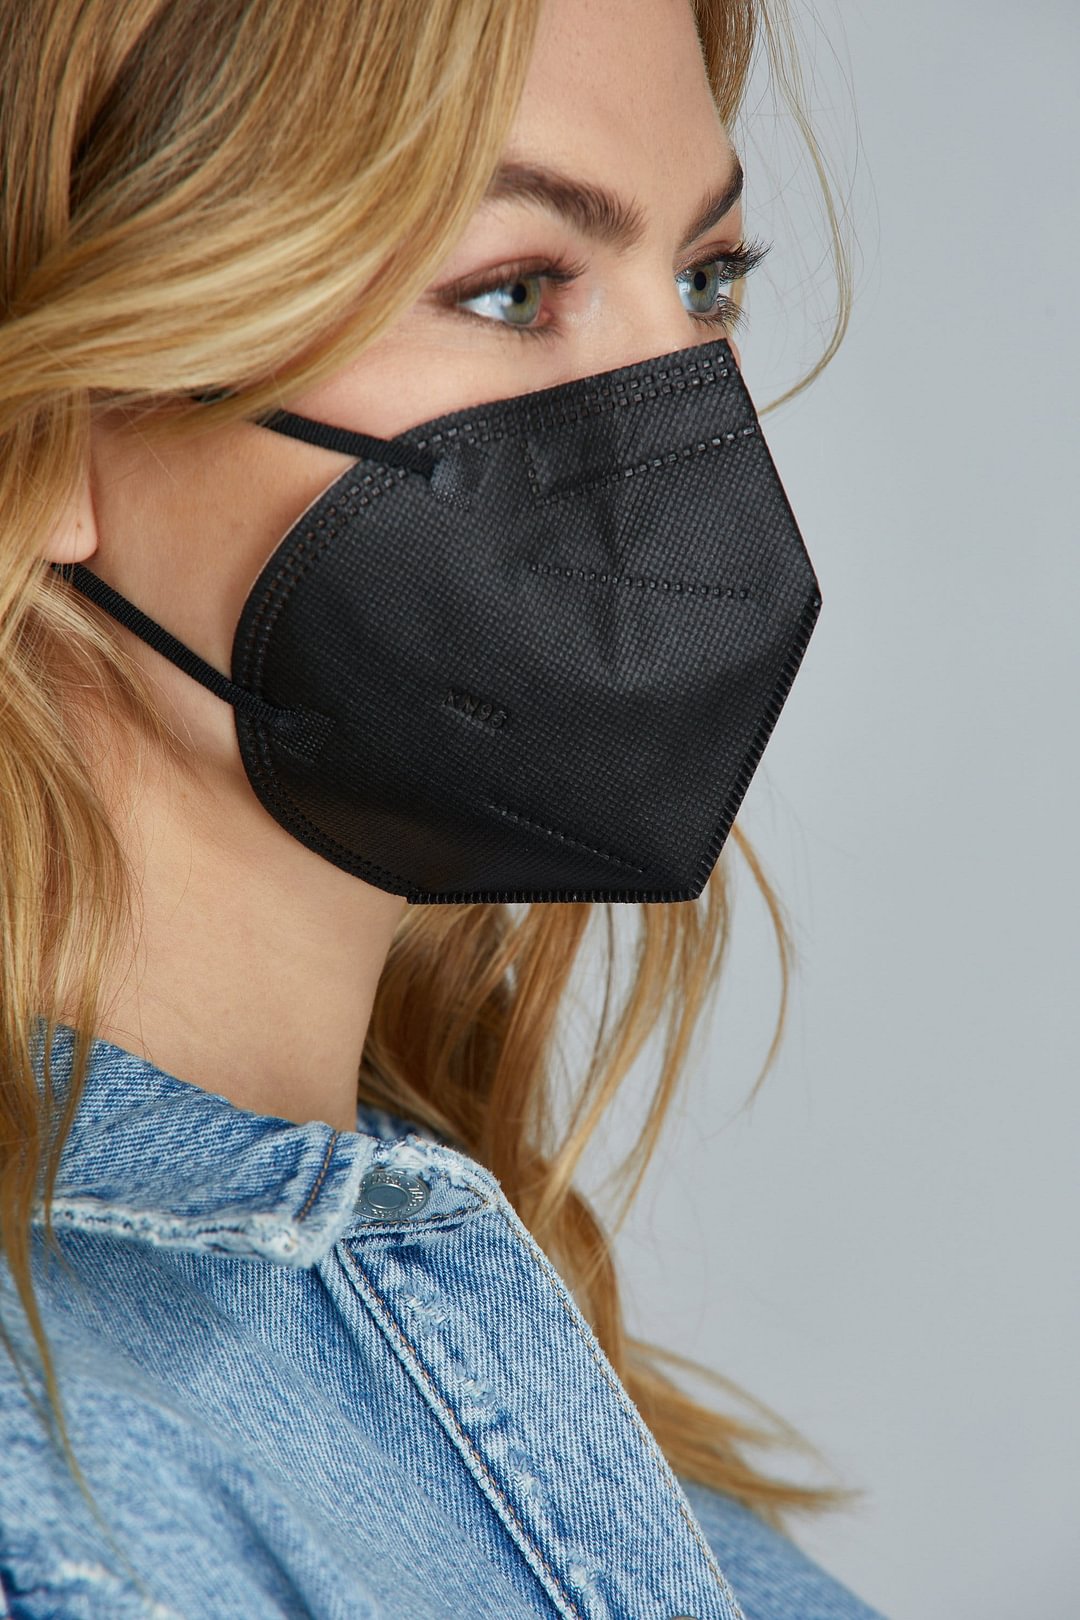 Black KN95 Face Masks - 10 Pack